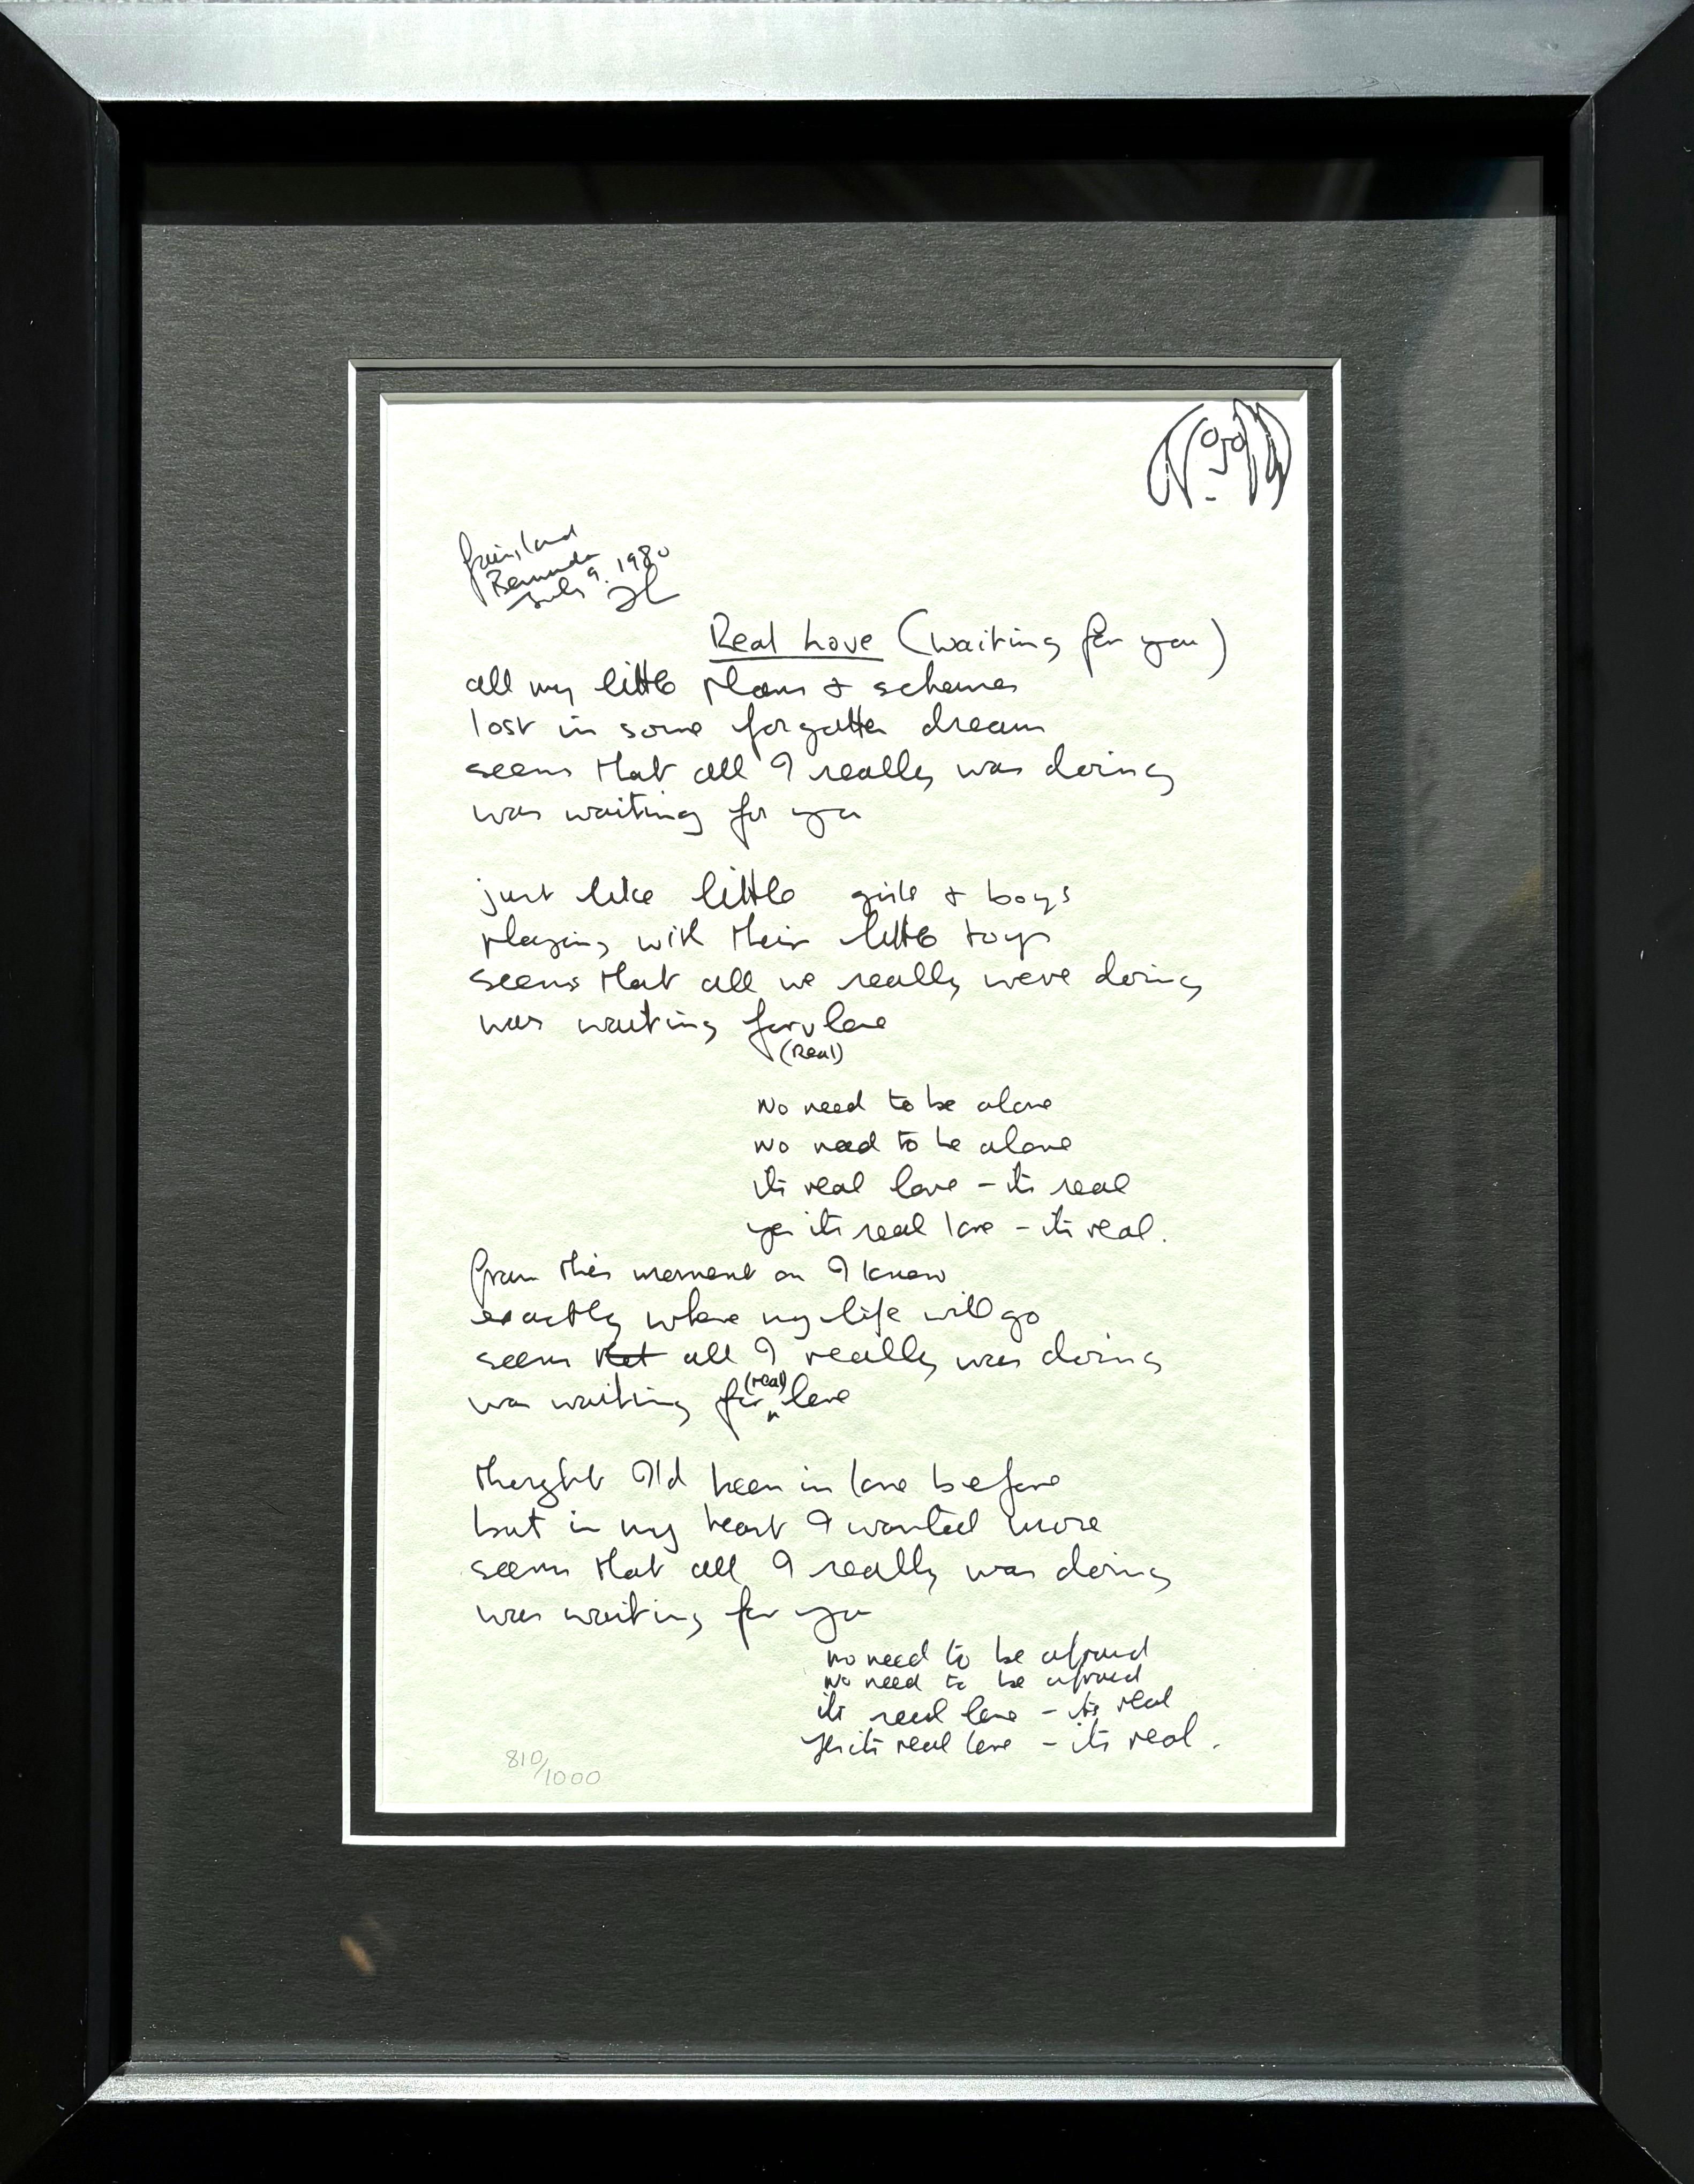 John Lennon Print - "Real Love" Framed Limited Edition Hand Written Lyrics